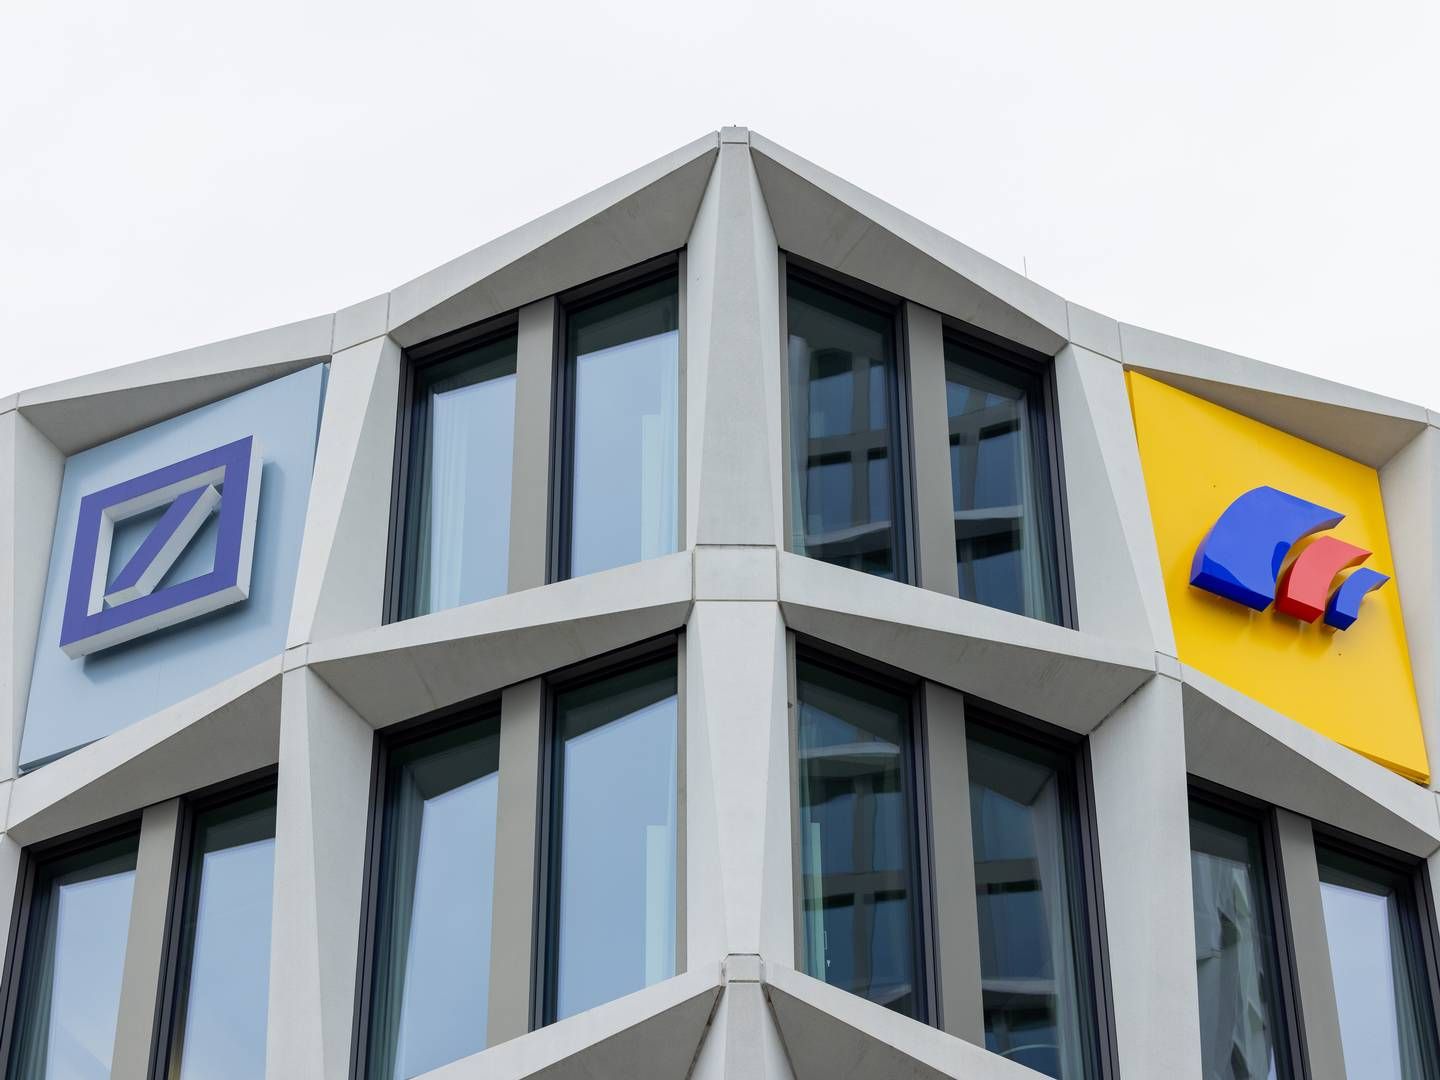 Blick auf die Konzernzentrale der Postbank mit den Logos von Deutscher Bank und Postbank. | Foto: picture alliance/dpa | Rolf Vennenbernd